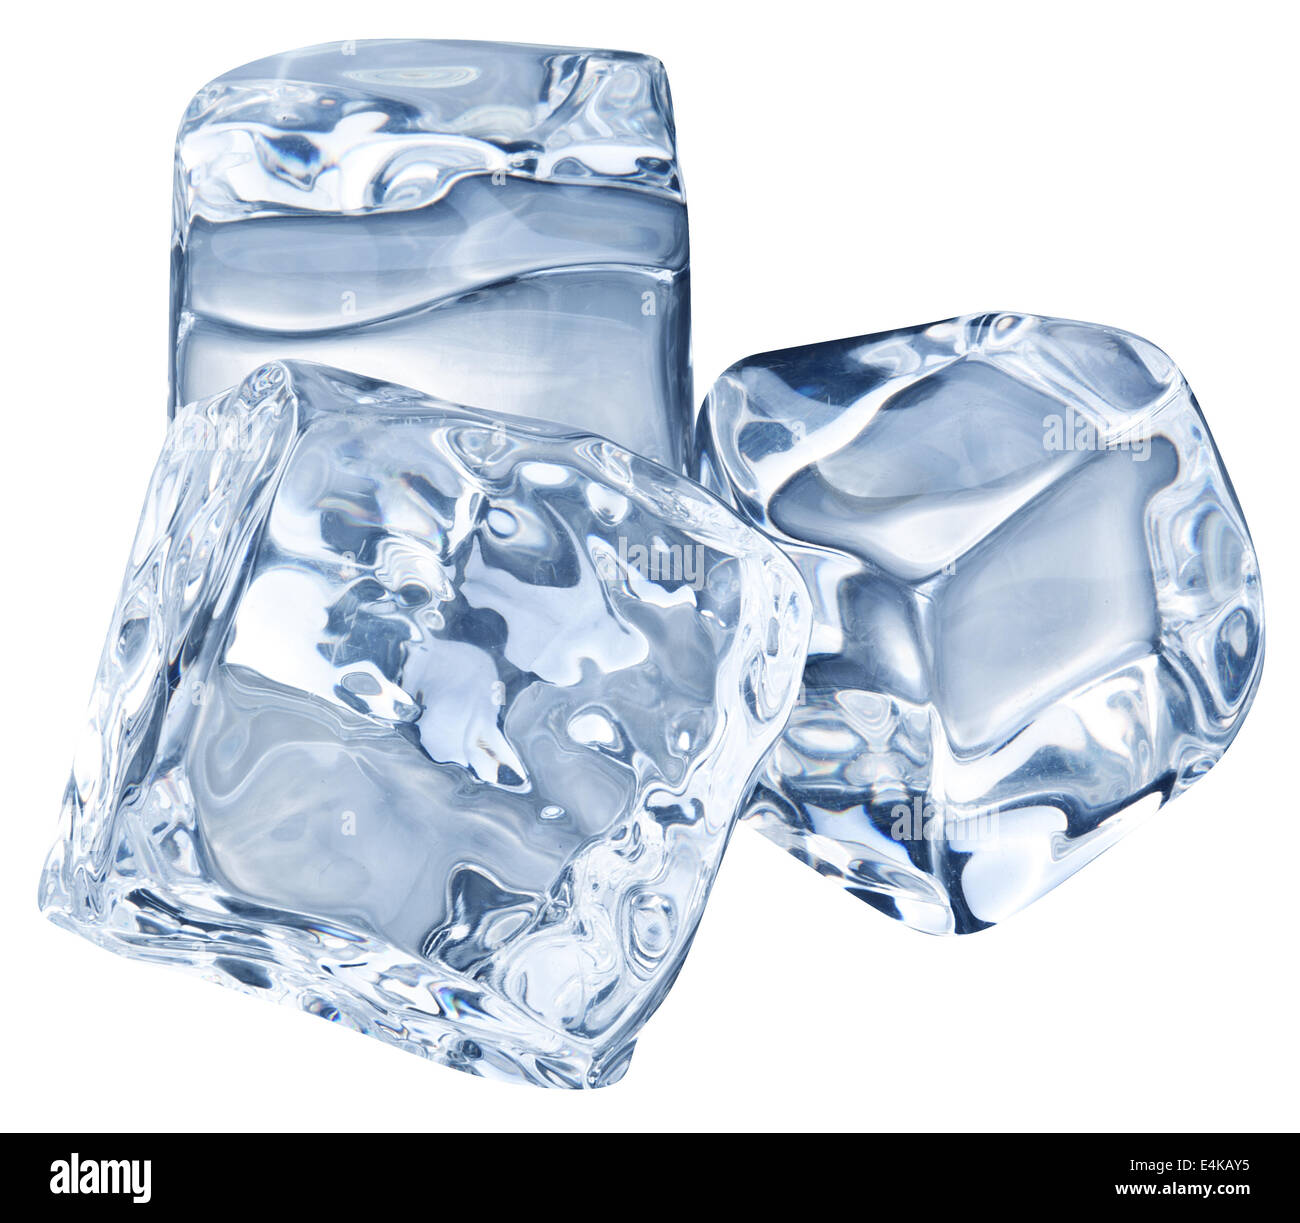 Cubetti di ghiaccio immagini e fotografie stock ad alta risoluzione - Alamy